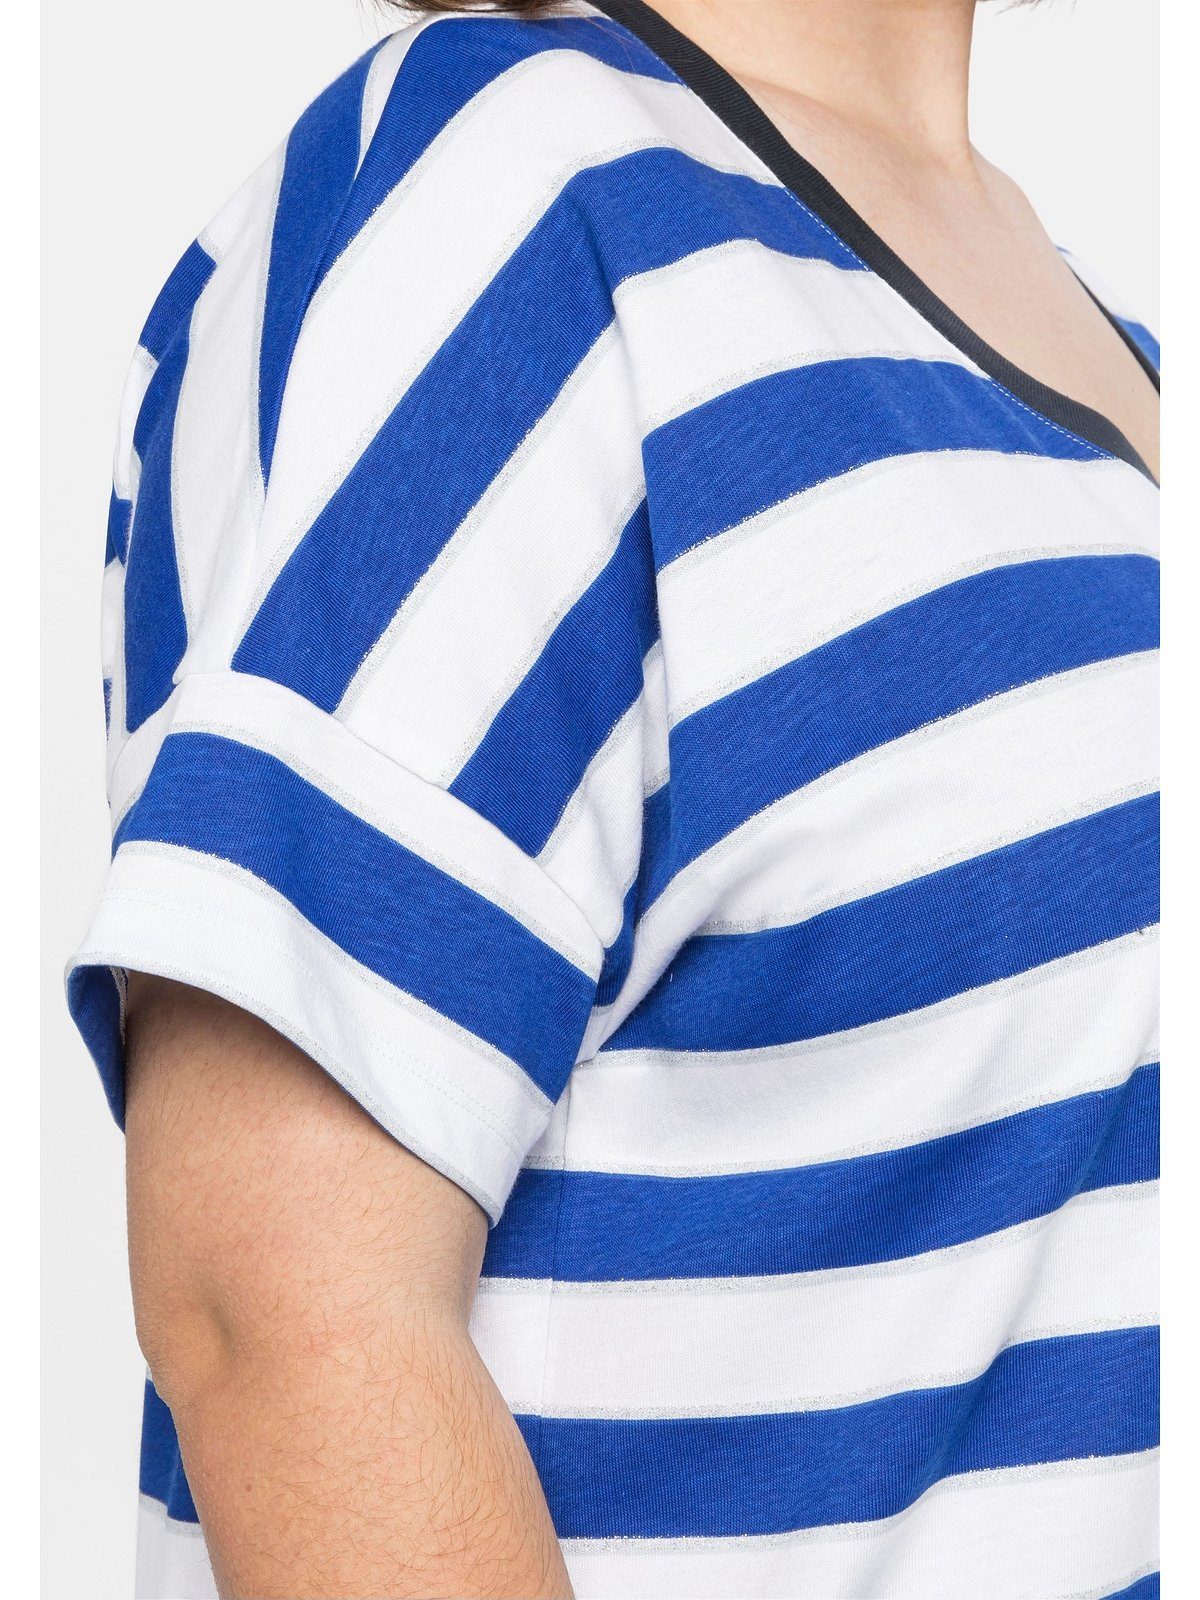 Sheego in mit Größen Große Glitzergarn, royalblau-weiß T-Shirt Oversize-Form